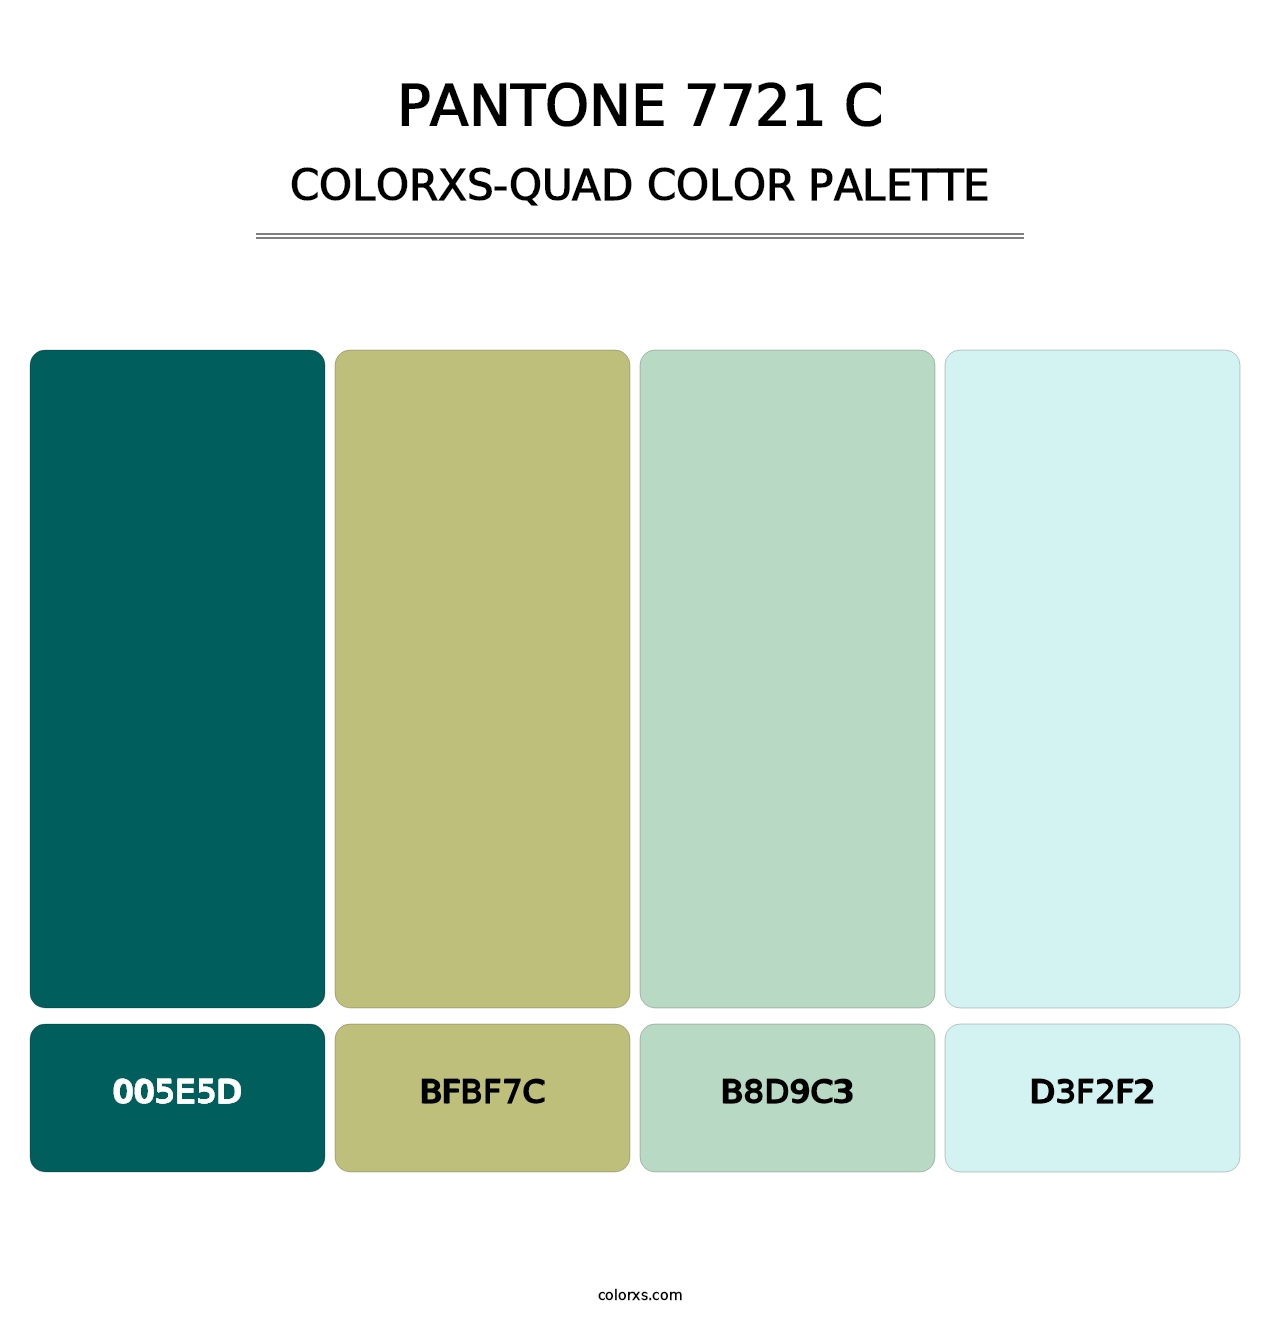 PANTONE 7721 C - Colorxs Quad Palette